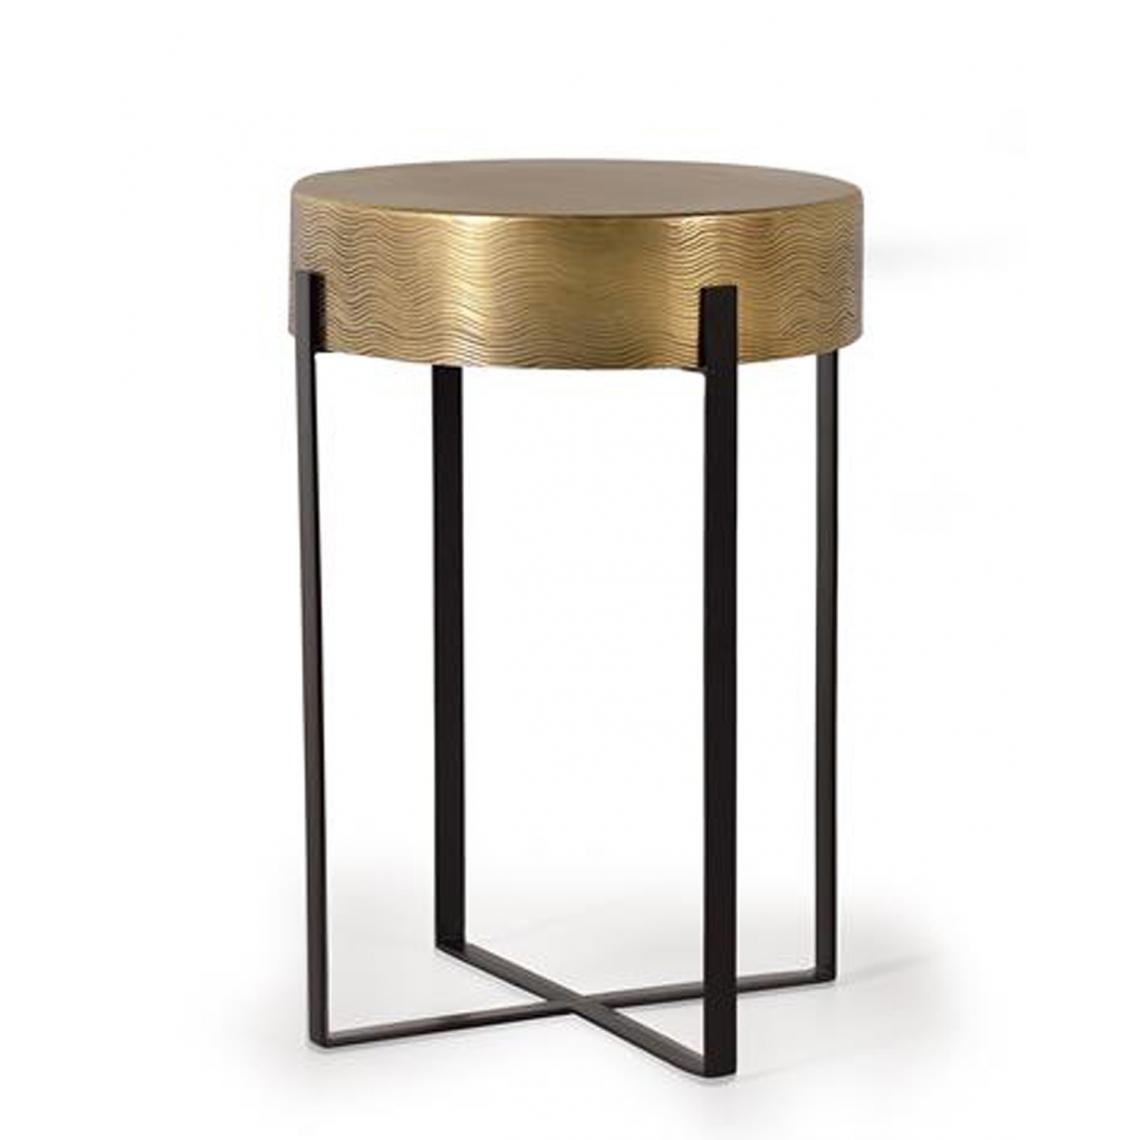 Pegane - Table basse en aluminium coloris Bronze - diamètre 40 x hauteur 60 cm - Tables basses